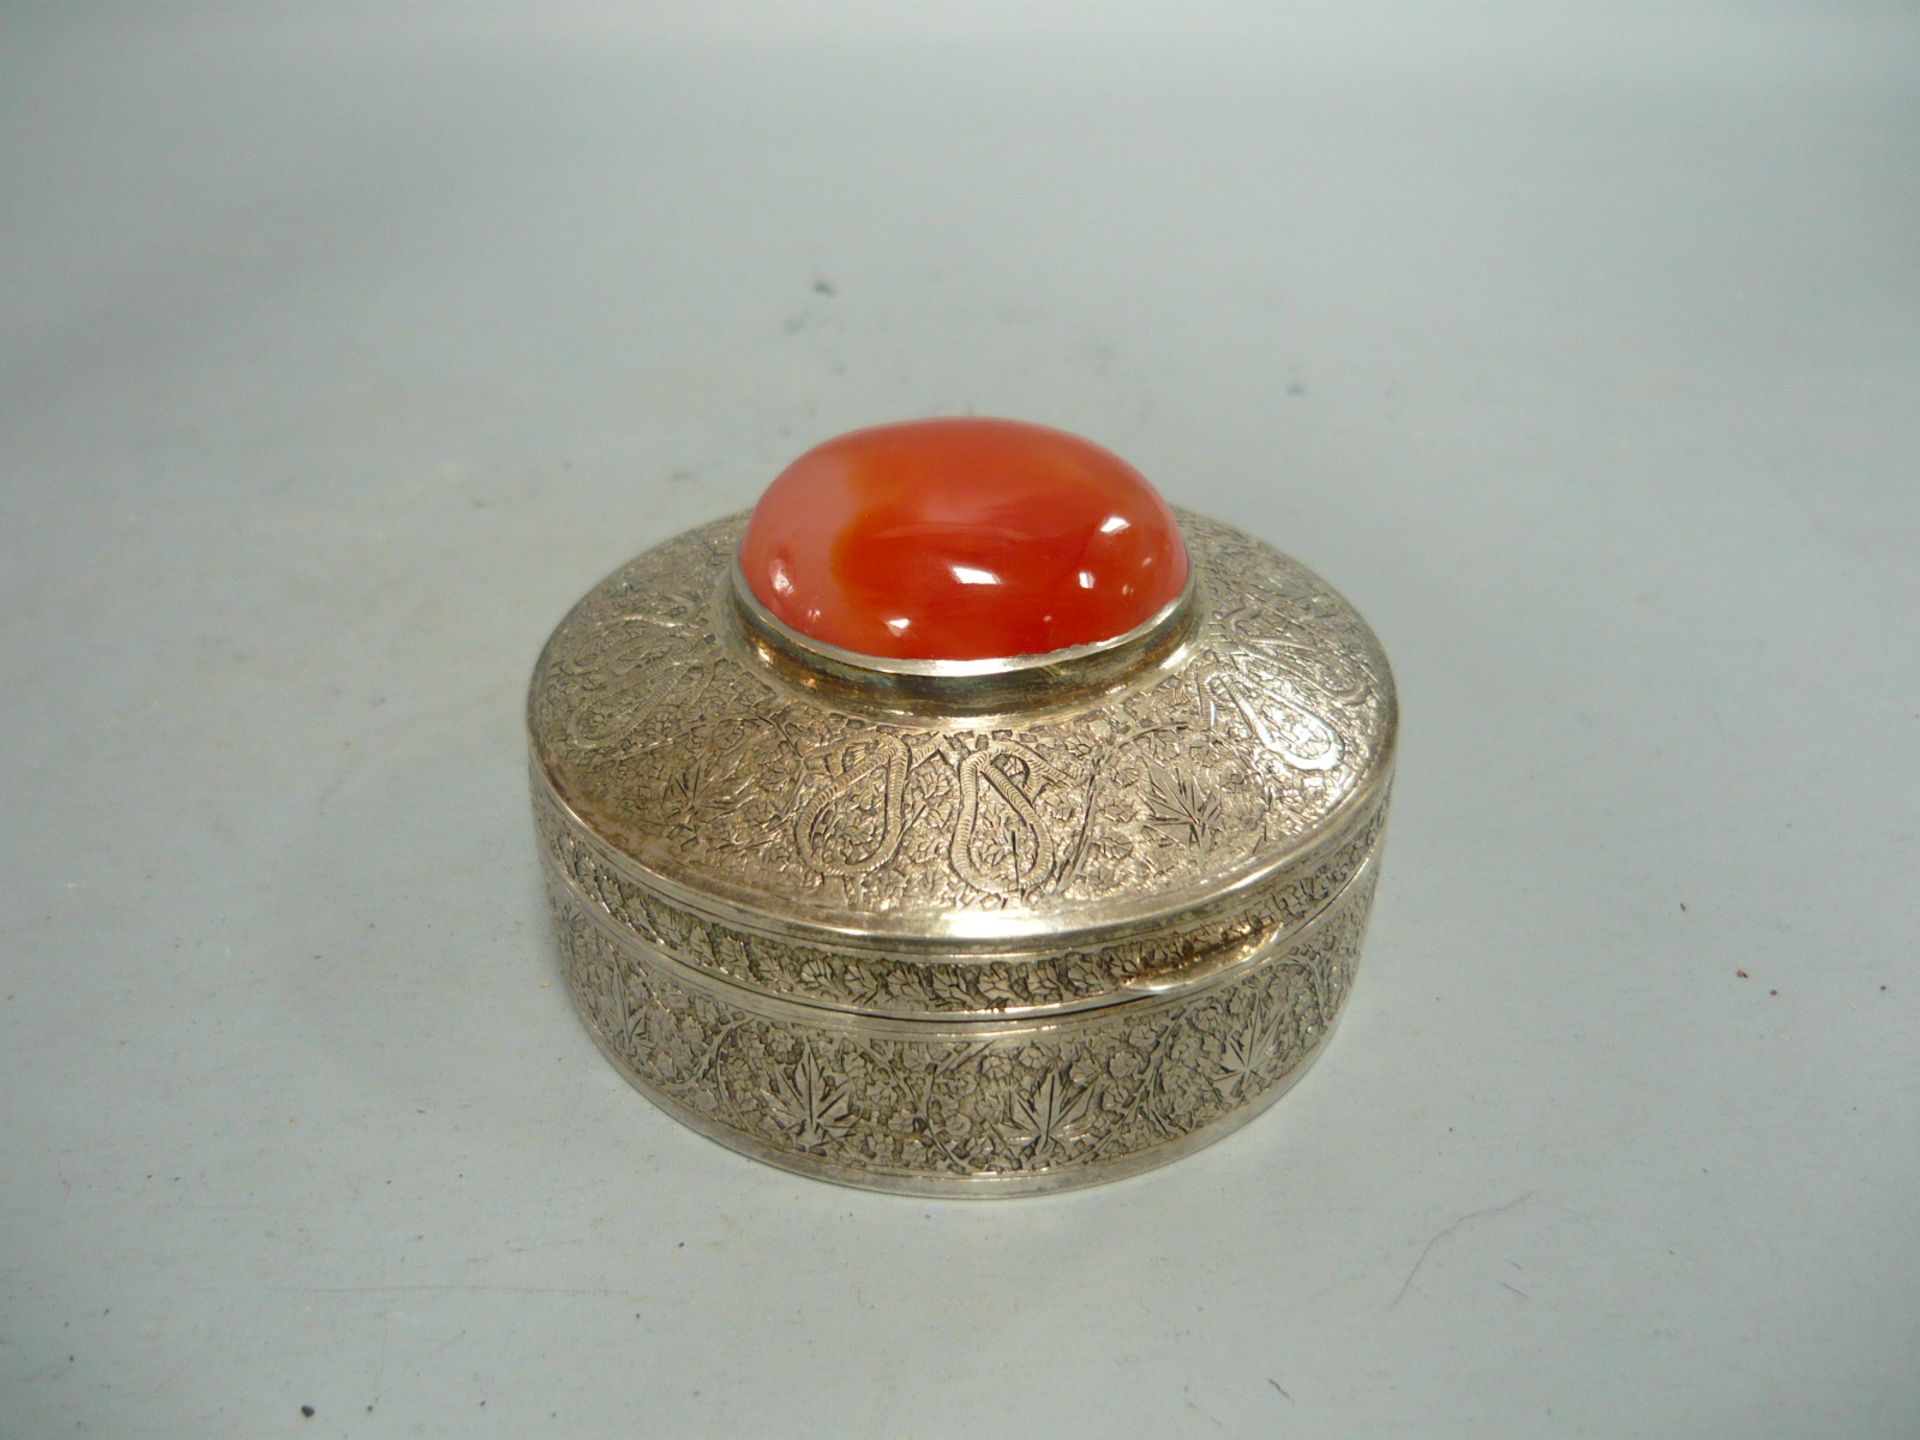 Sammelwürdige Silberdose mit eingesetztem Karneol. Silber über 750er). Ø 8cm, H. 4,5cm.